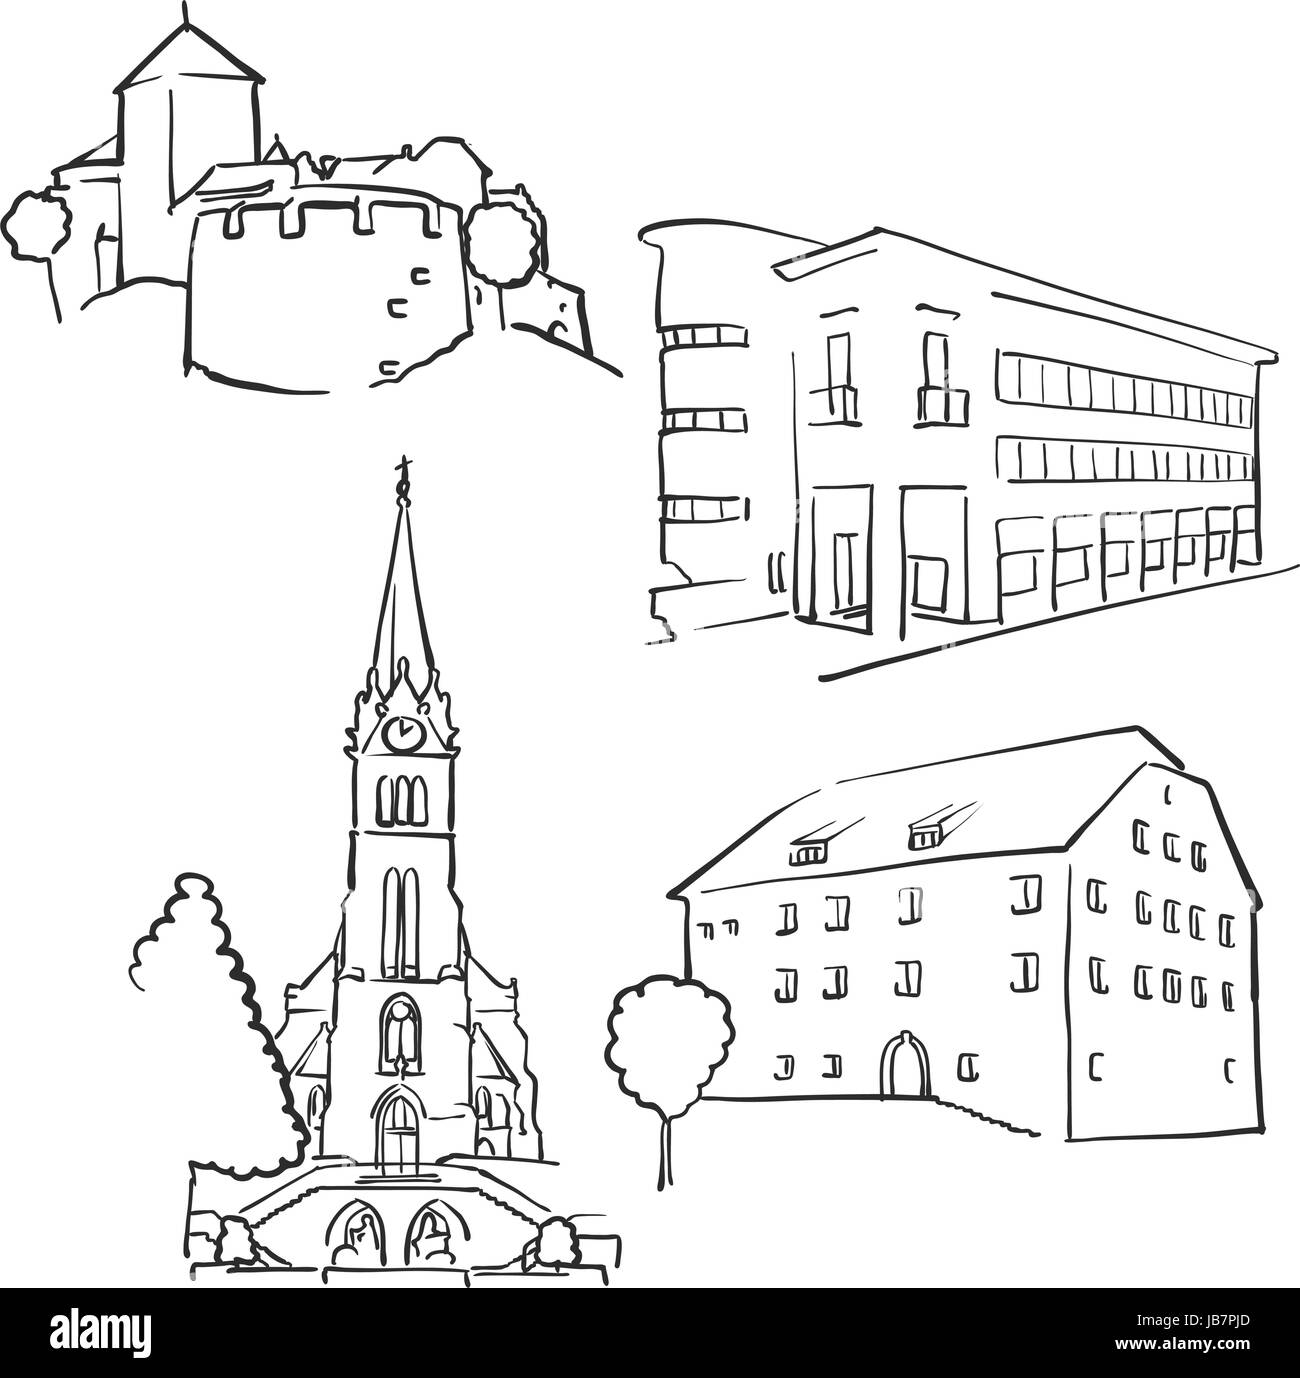 Vaduz Liechtenstein berühmte Bauwerke, Monochrome skizzierten Reisen Sehenswürdigkeiten, skalierbare Vektor-Illustration Stock Vektor